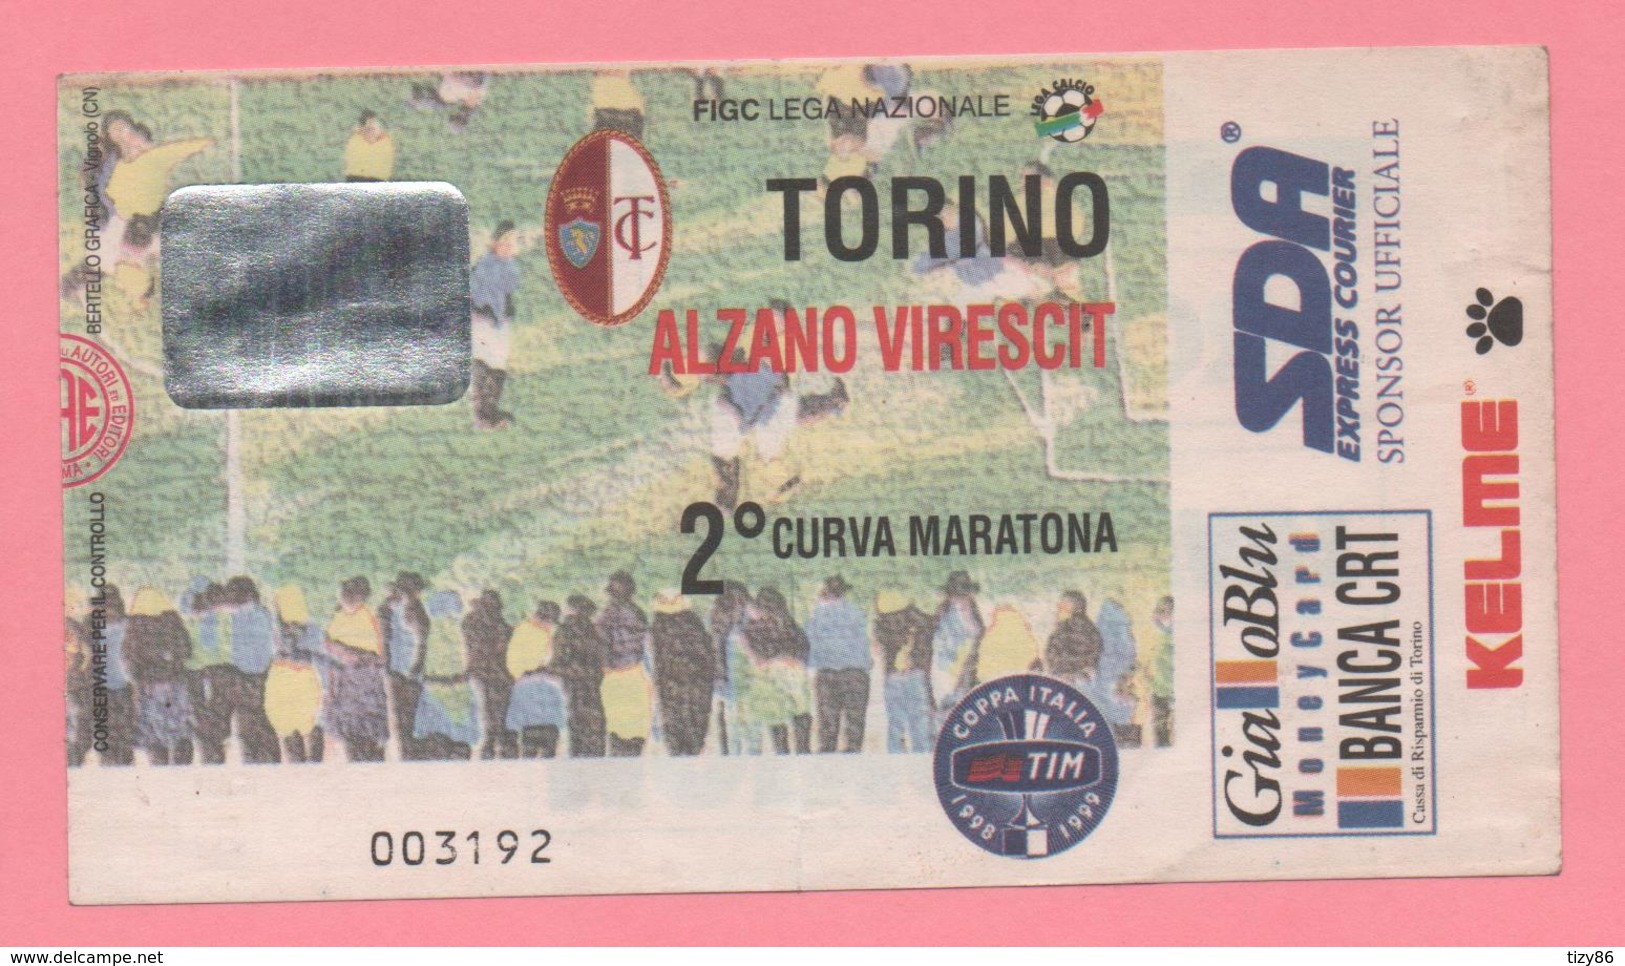 Biglietto D'ingresso Torino Alzano Virescit - Tickets - Vouchers